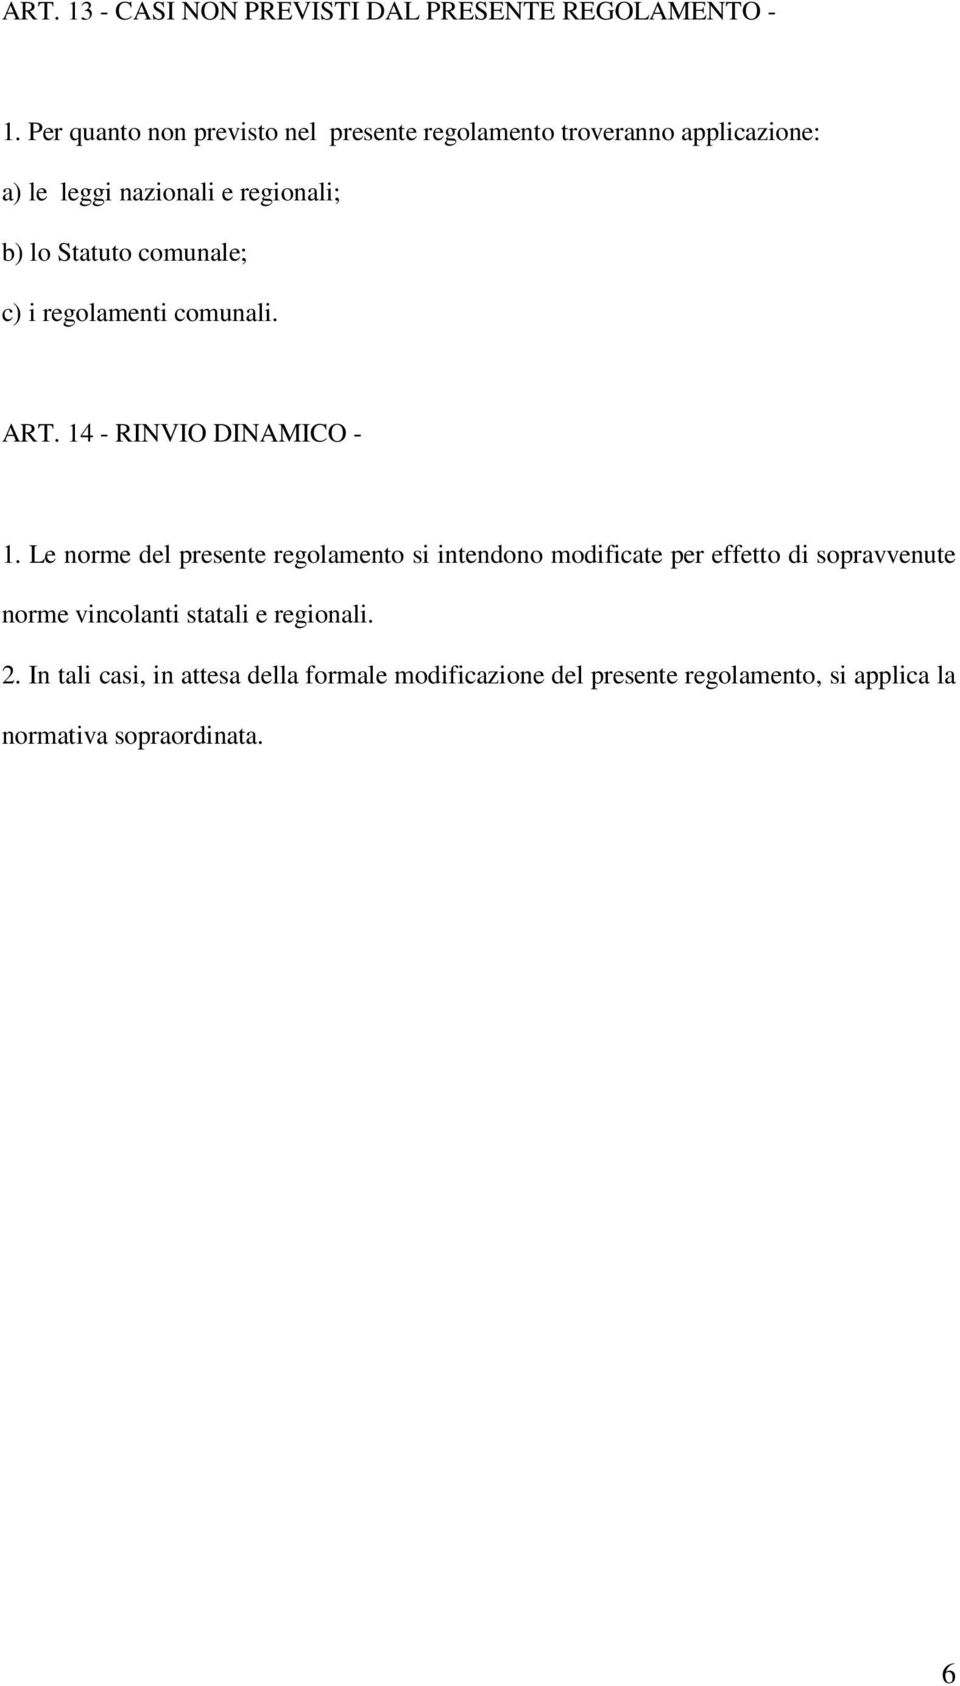 comunale; c) i regolamenti comunali. ART. 14 - RINVIO DINAMICO - 1.